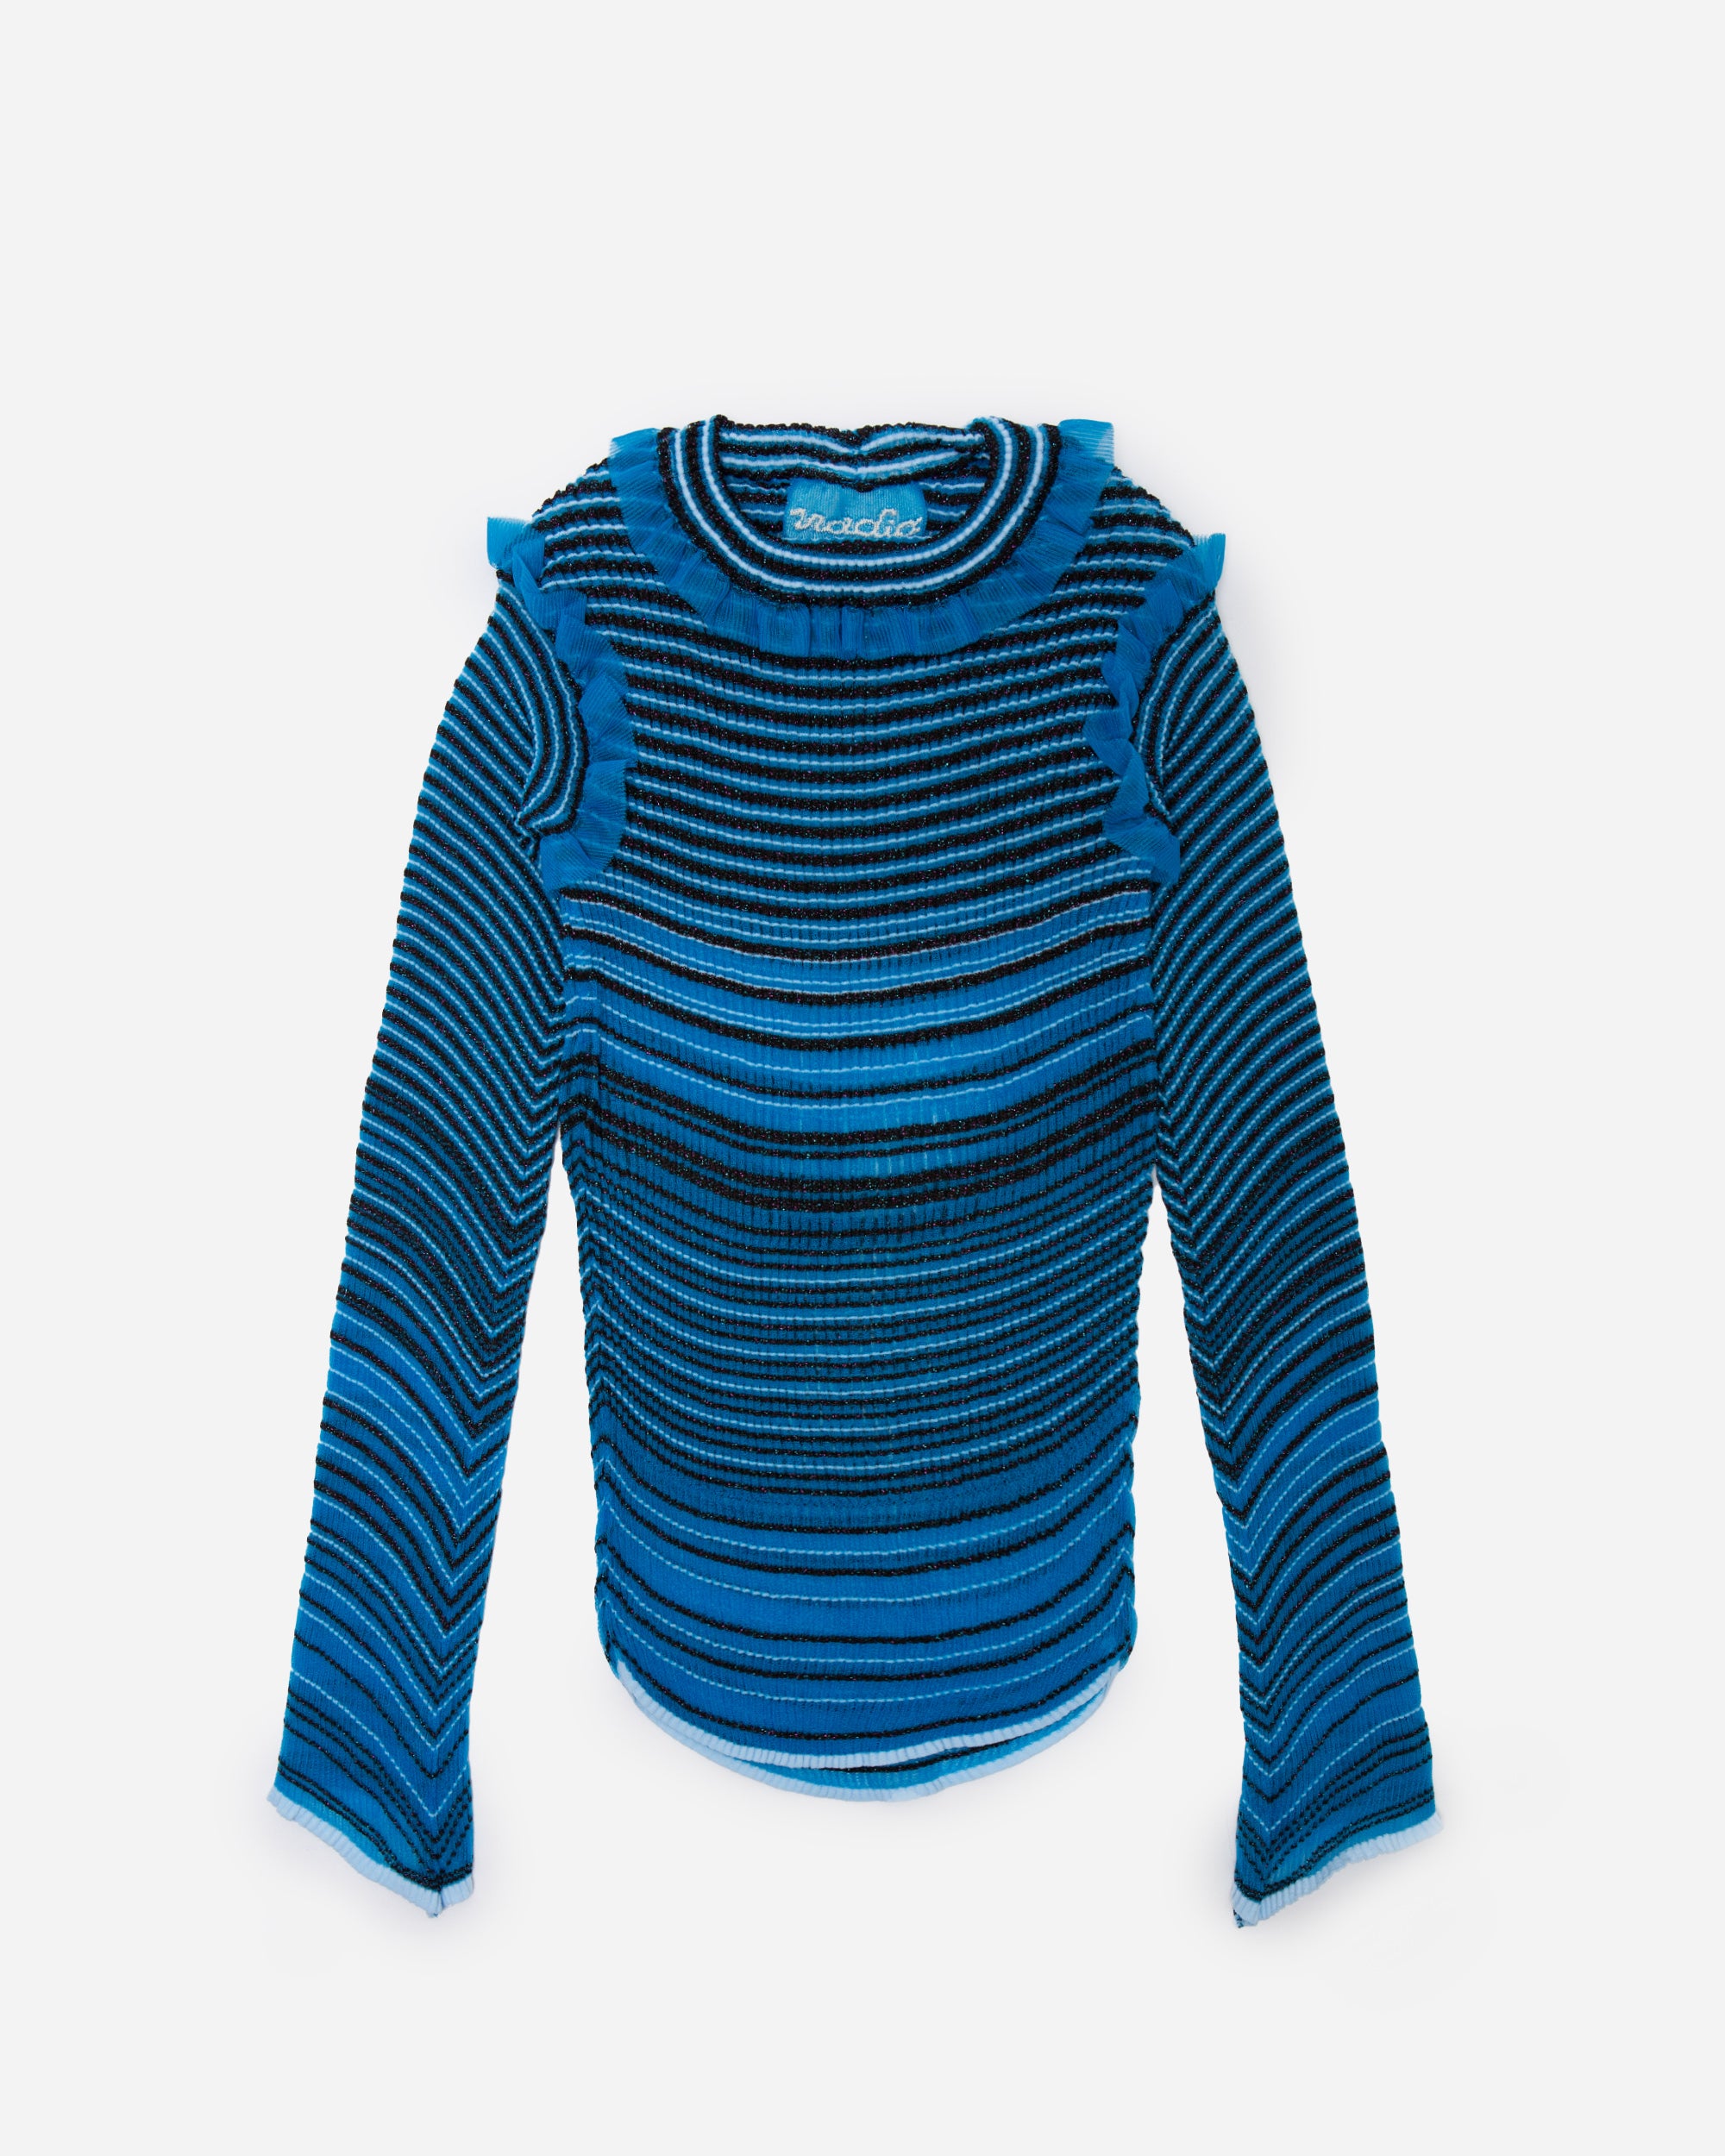 Nadia Wire Secret stripes jumper blue/brown 802-BLU